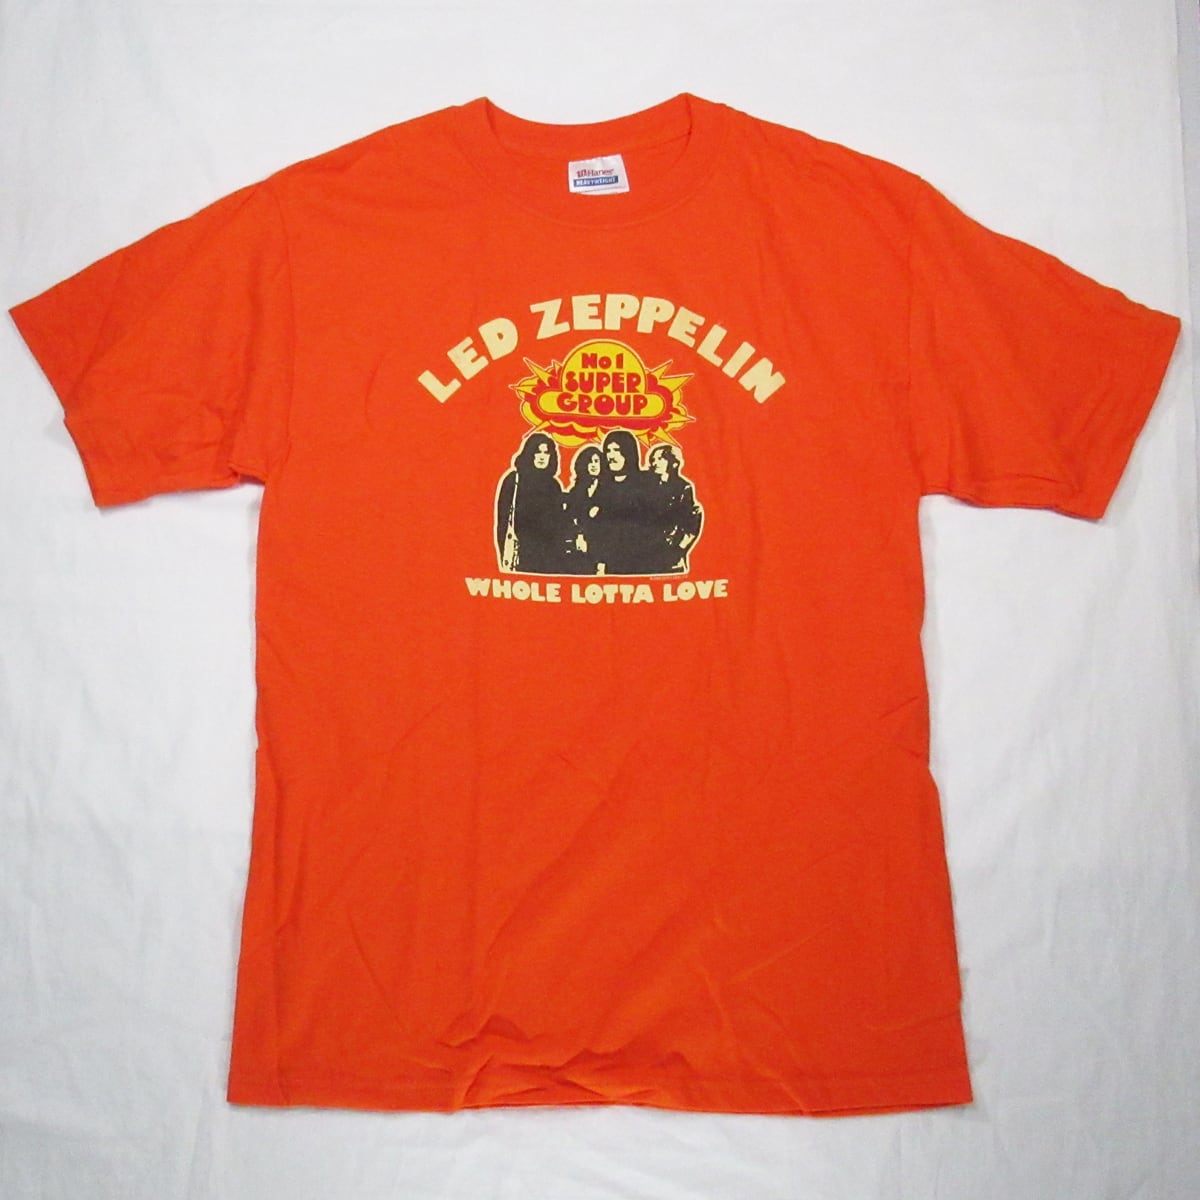 レッド・ツェッペリン LED ZEPPELIN Tシャツ No.1 Band【NEW】 | ROCK ...